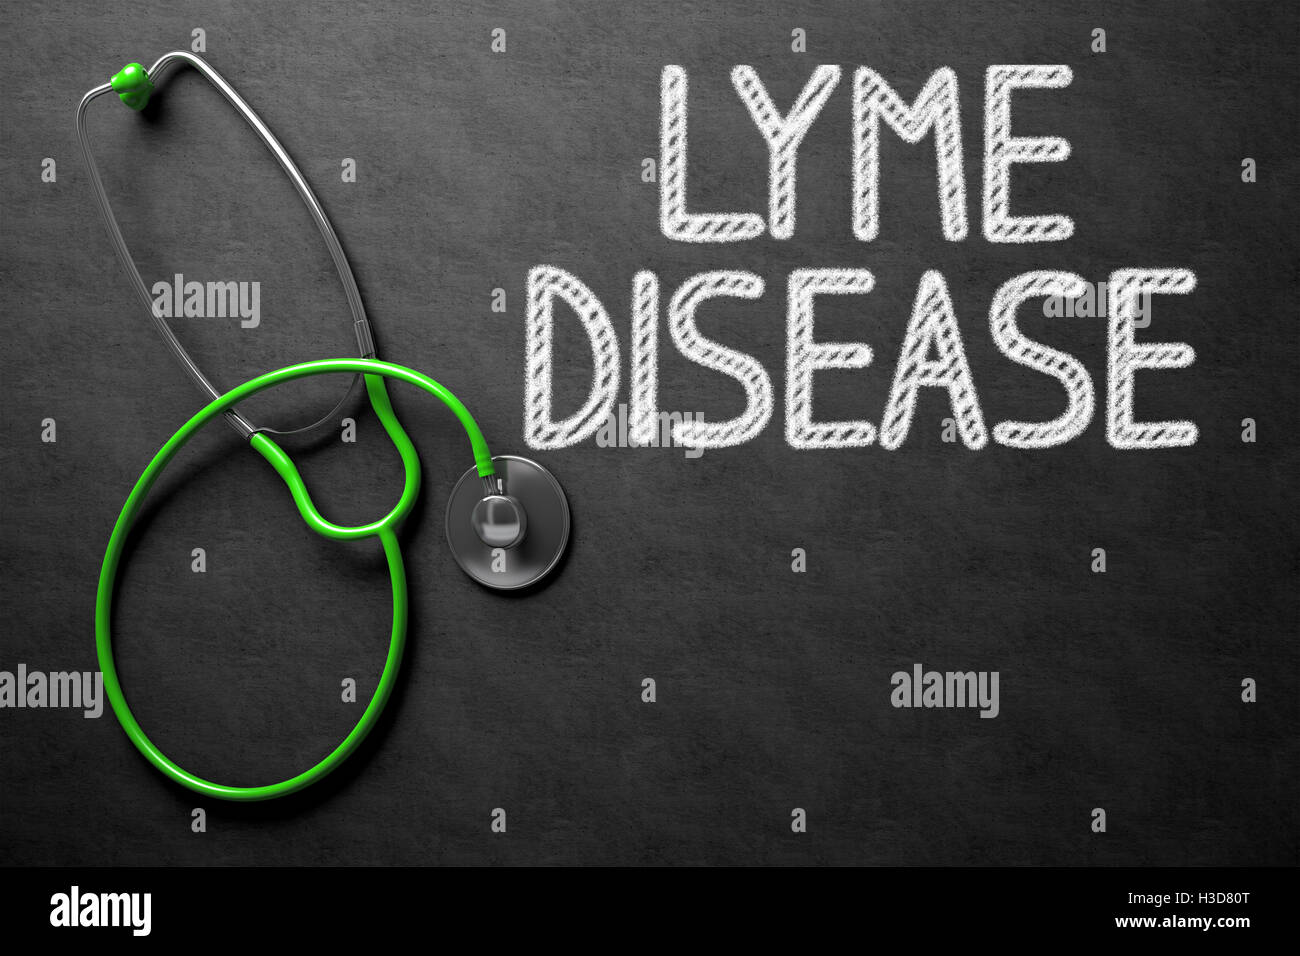 Lyme Disease Handwritten on Chalkboard. 3D Illustration. Stock Photo